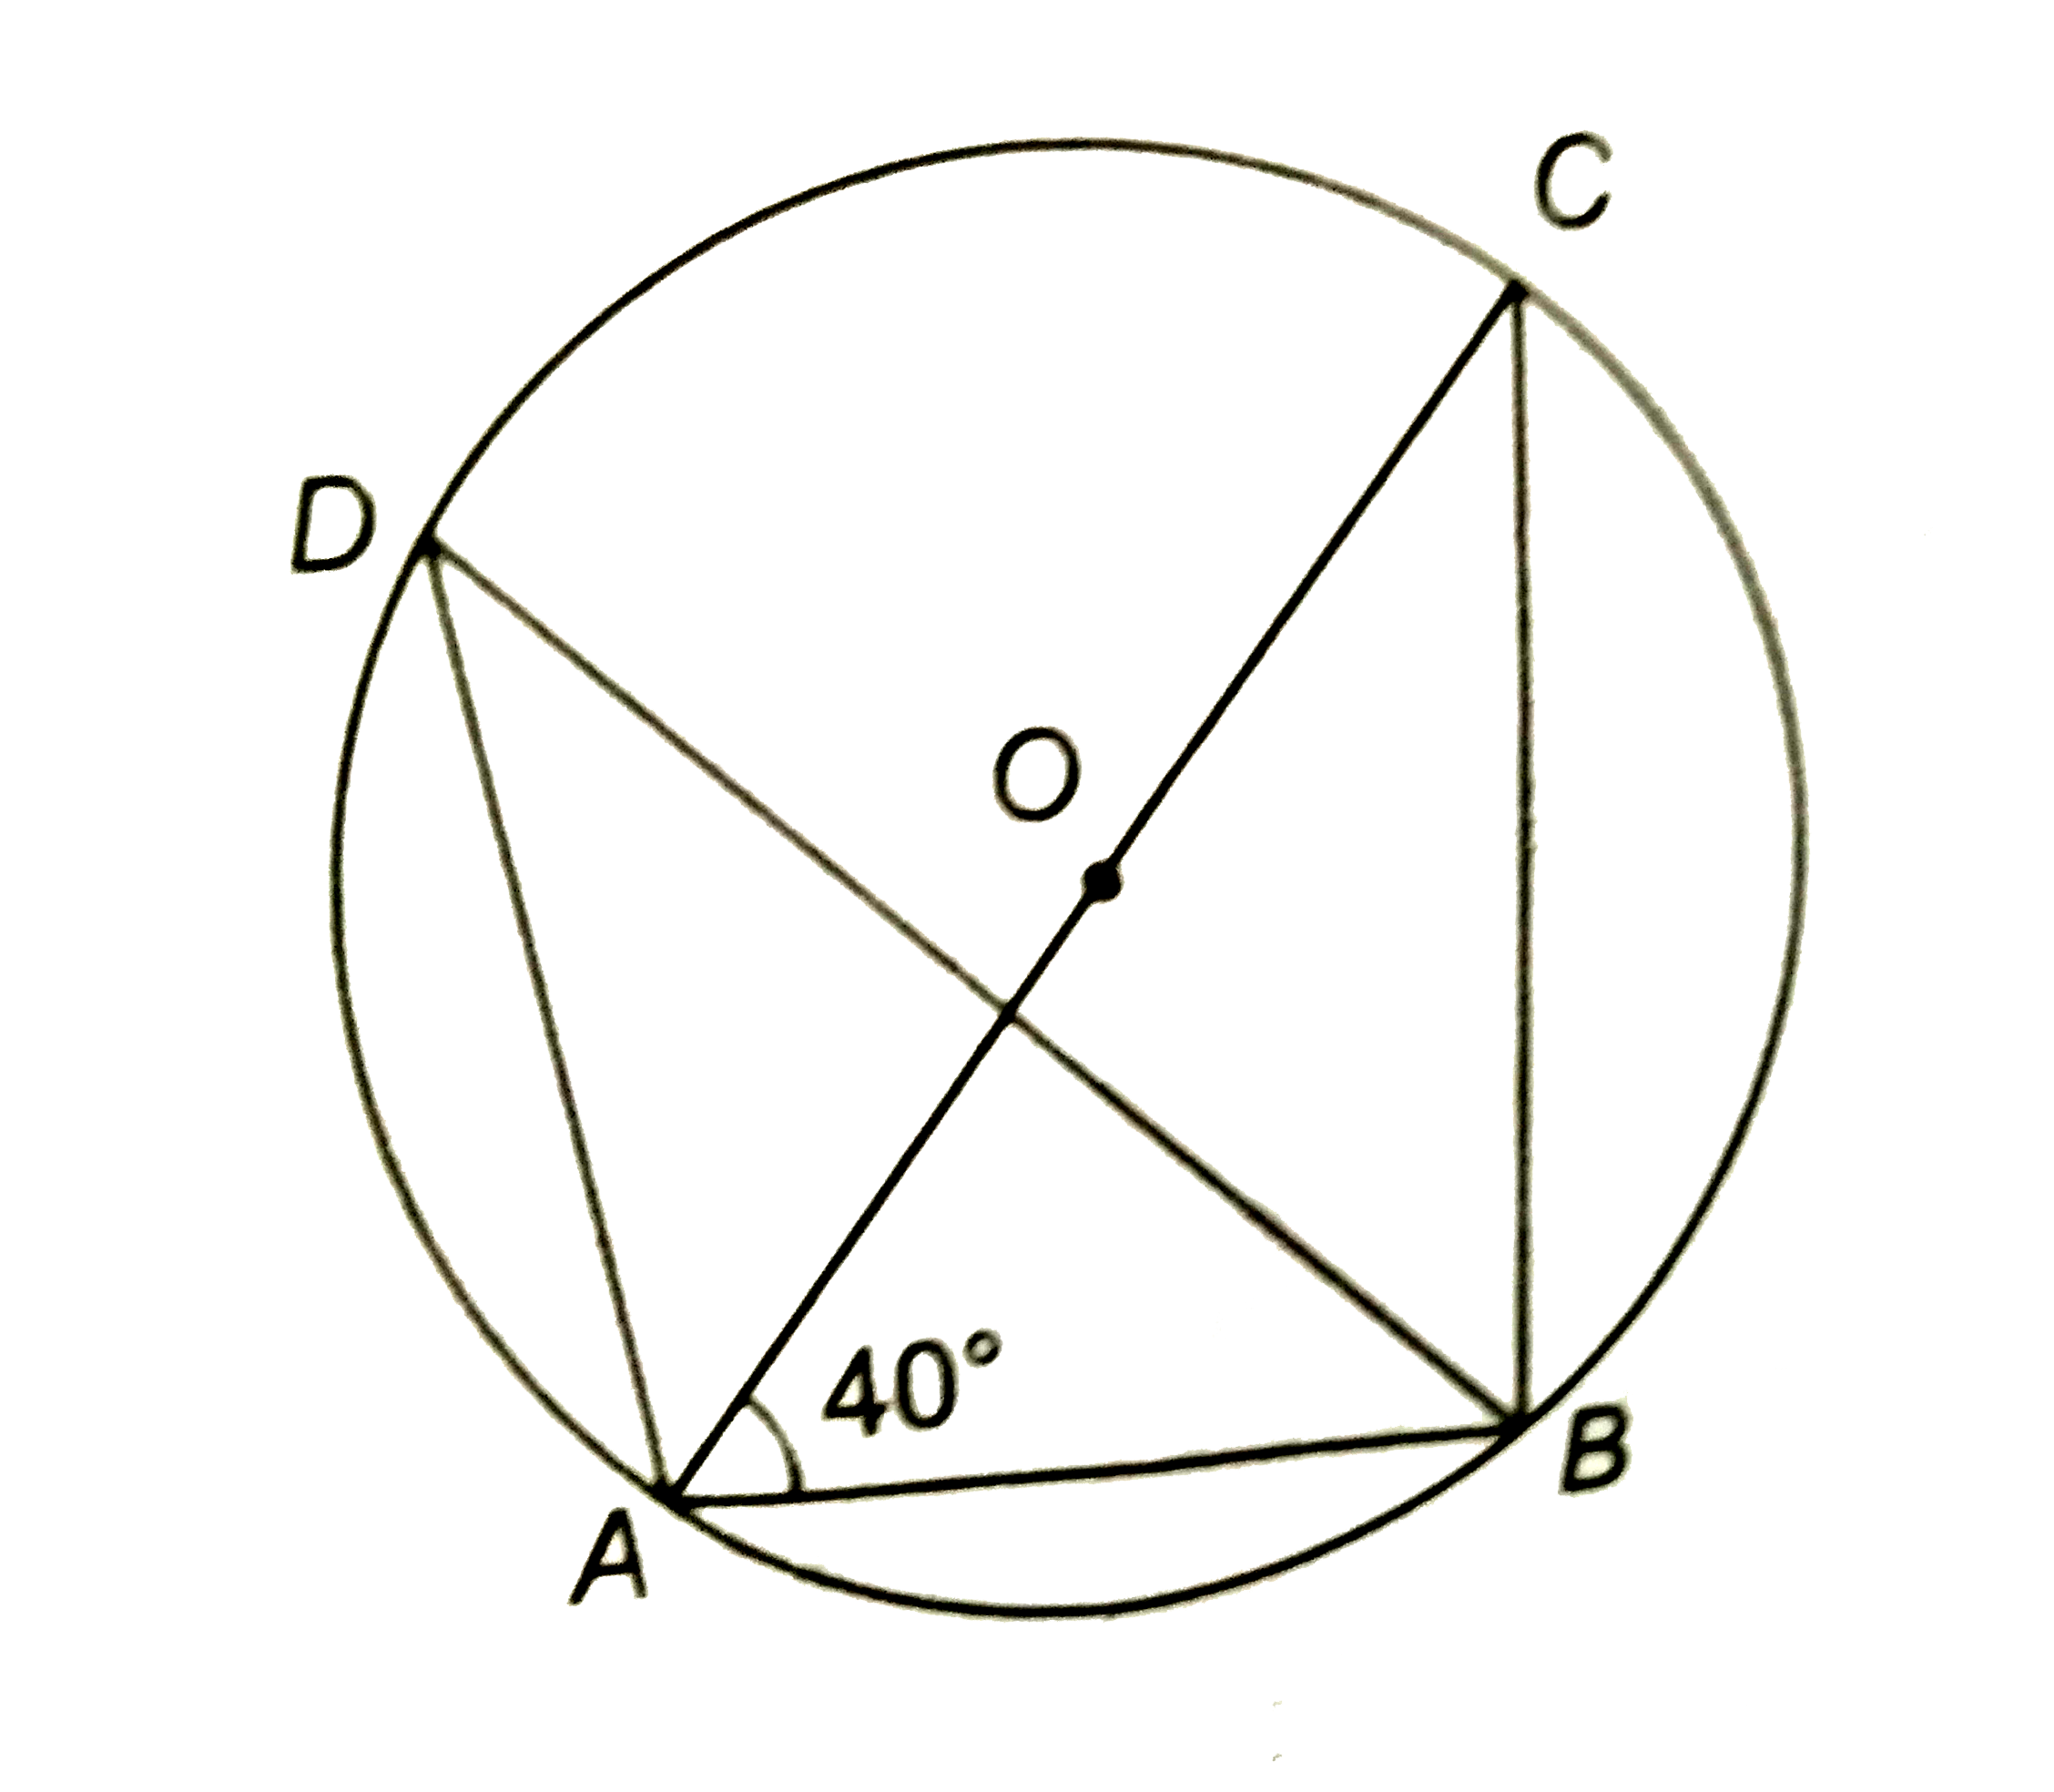 संलग्न चित्र में, angleADB और angleACB एक ही वृत्तखण्ड के कोण हैं तथा जीवा AC केन्द्र O से होकर जाती है | यदि angleCAB=40^(@), तो angleADB का मान ज्ञात कीजिए |